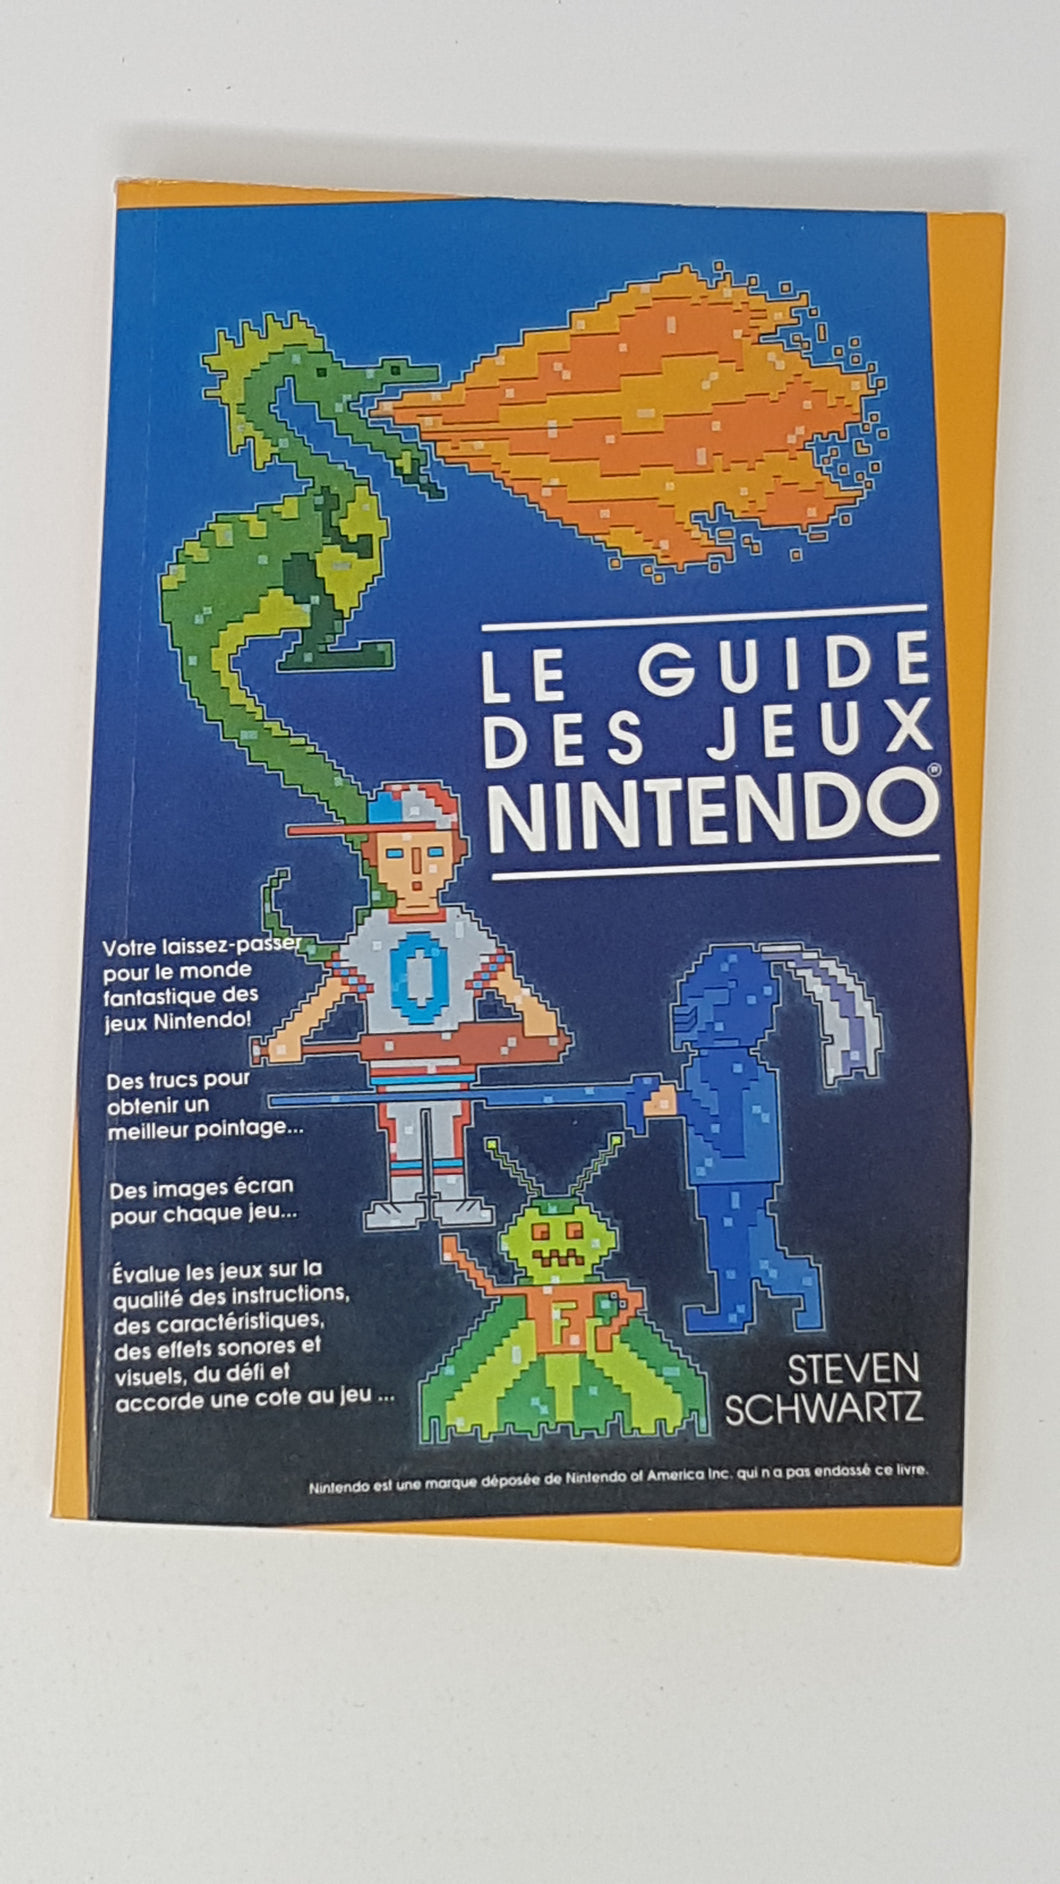 Le Guide des Jeux Nintendo [Steven Schwartz] - Guide stratégique